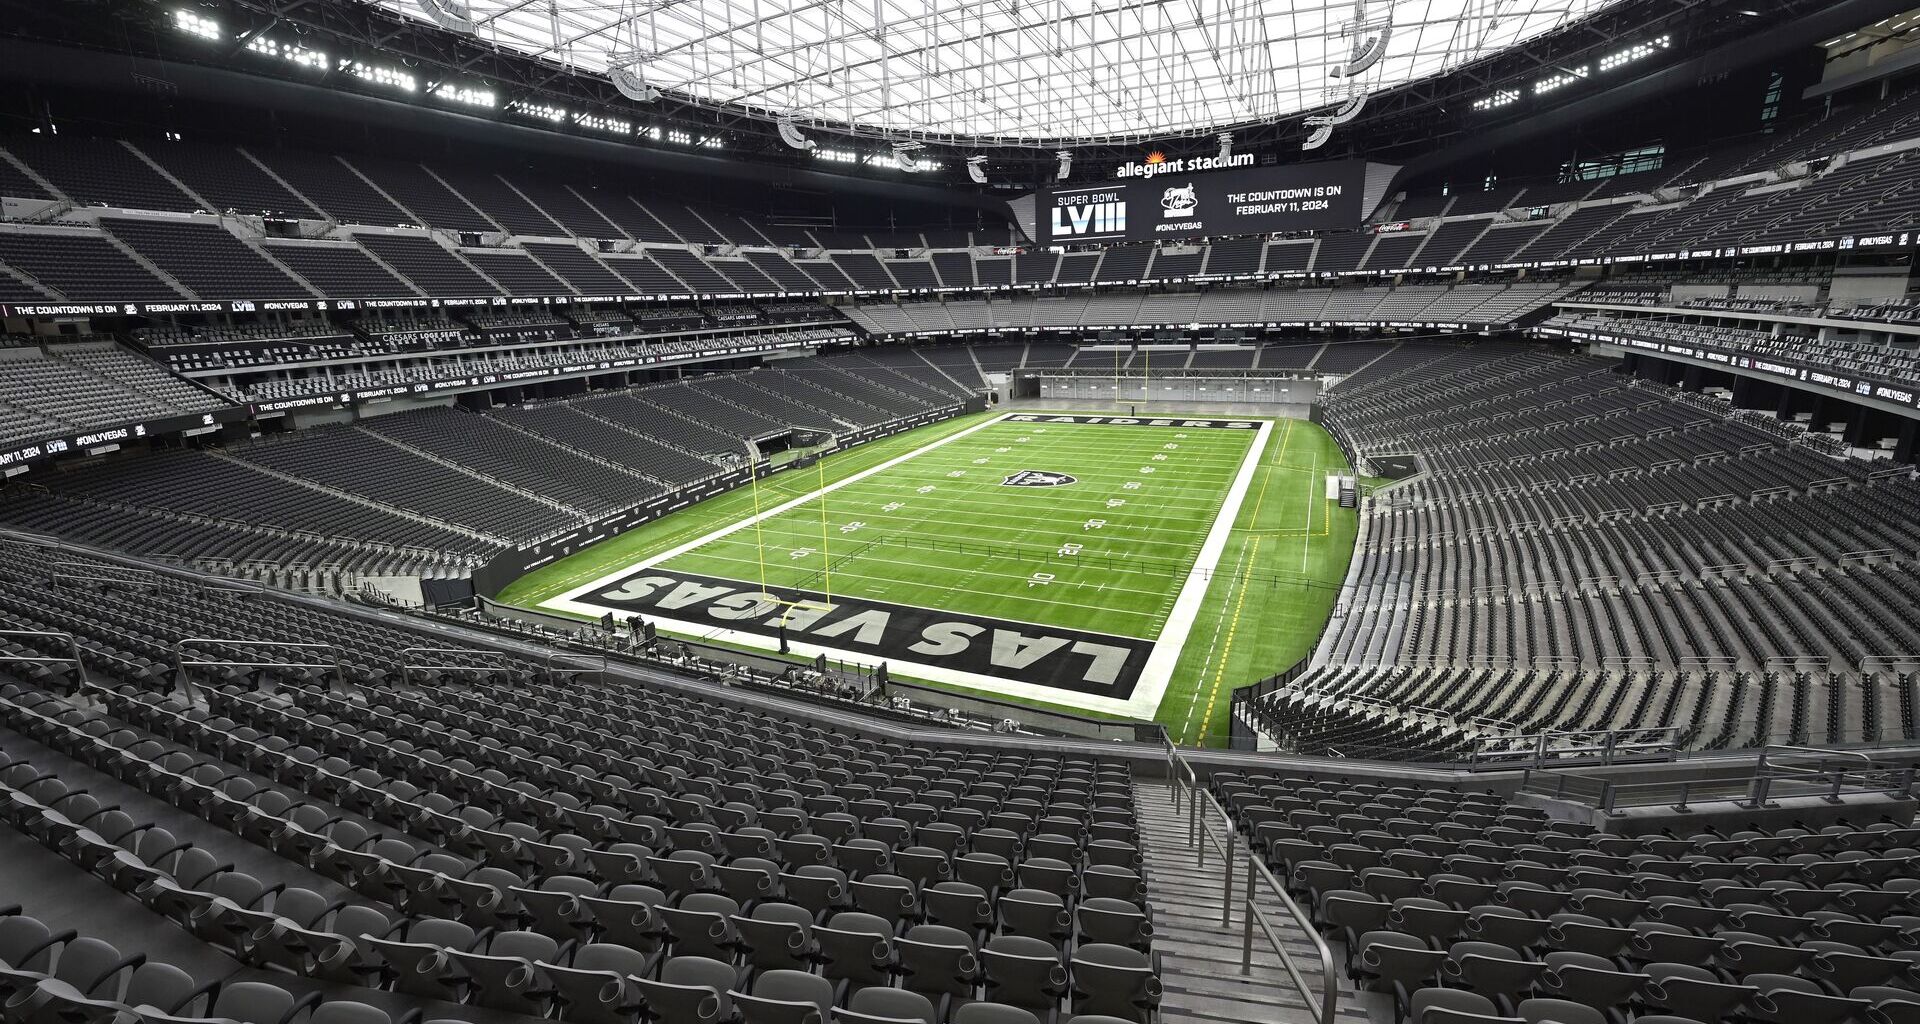 Ubicado junto al famoso Strip de Las Vegas, el Allegiant Stadium, o “The Death Star”, destaca por la llegada de los Raiders de la NFL, que jugaron allí su primer partido el 21 de septiembre del 2020, cuando derrotaron a los New Orleans Saints 34-24.